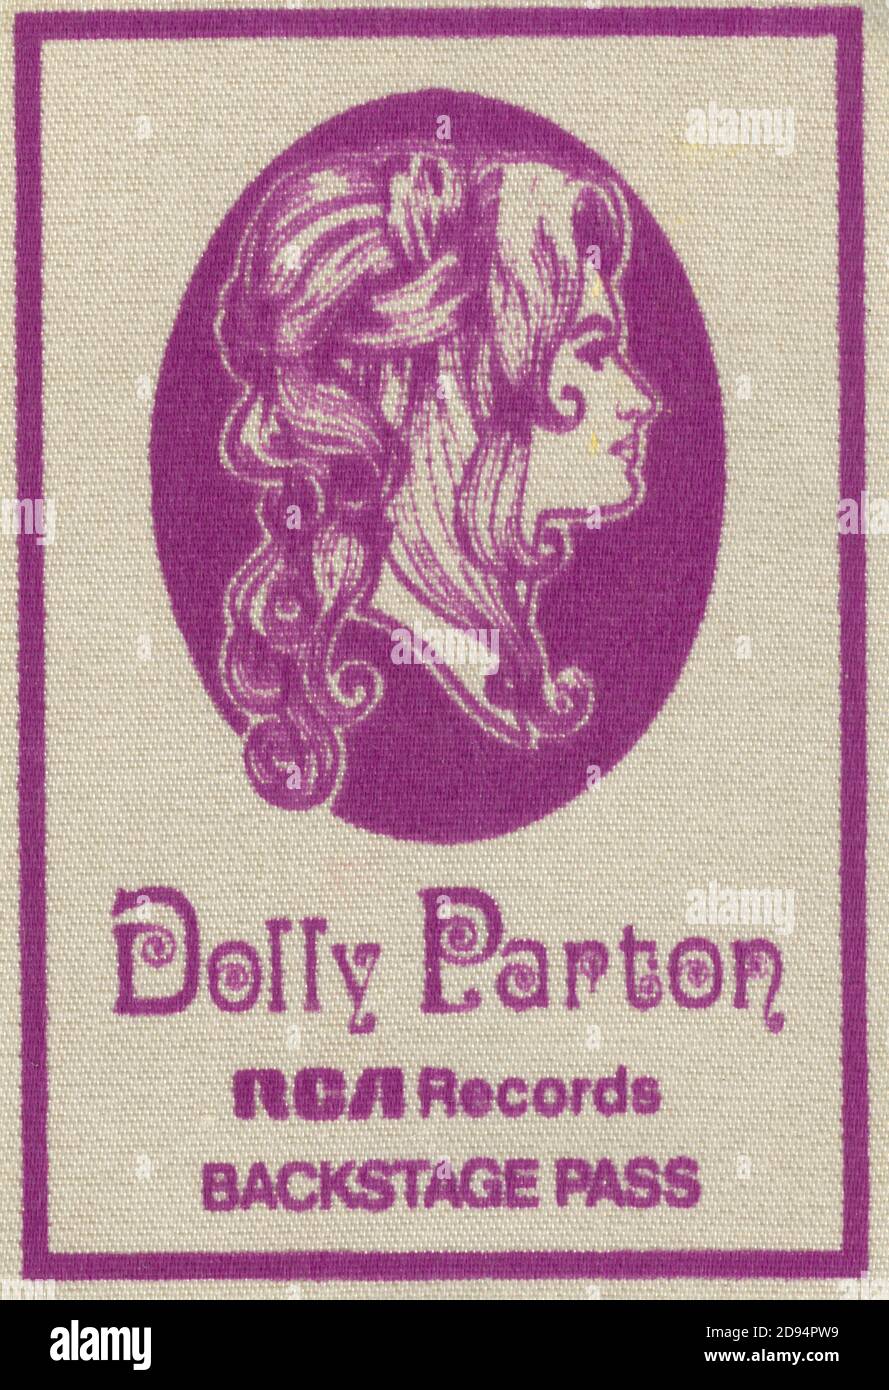 Pass per il backstage di Dolly Parton. Questo è stato dal concerto del 9 marzo 1977 presso la Brown County Arena di Green Bay, Wisconsin, USA. Attraverso gran parte degli anni '70, la maggior parte delle band e degli artisti musicali non stampavano i propri passi, ma piuttosto, dove mai suonavano, dipendevano dal promotore locale per fornire i passaggi e la sicurezza. Per vedere le mie altre immagini d'epoca legate alla musica, Cerca: Prestor musica d'epoca Foto Stock